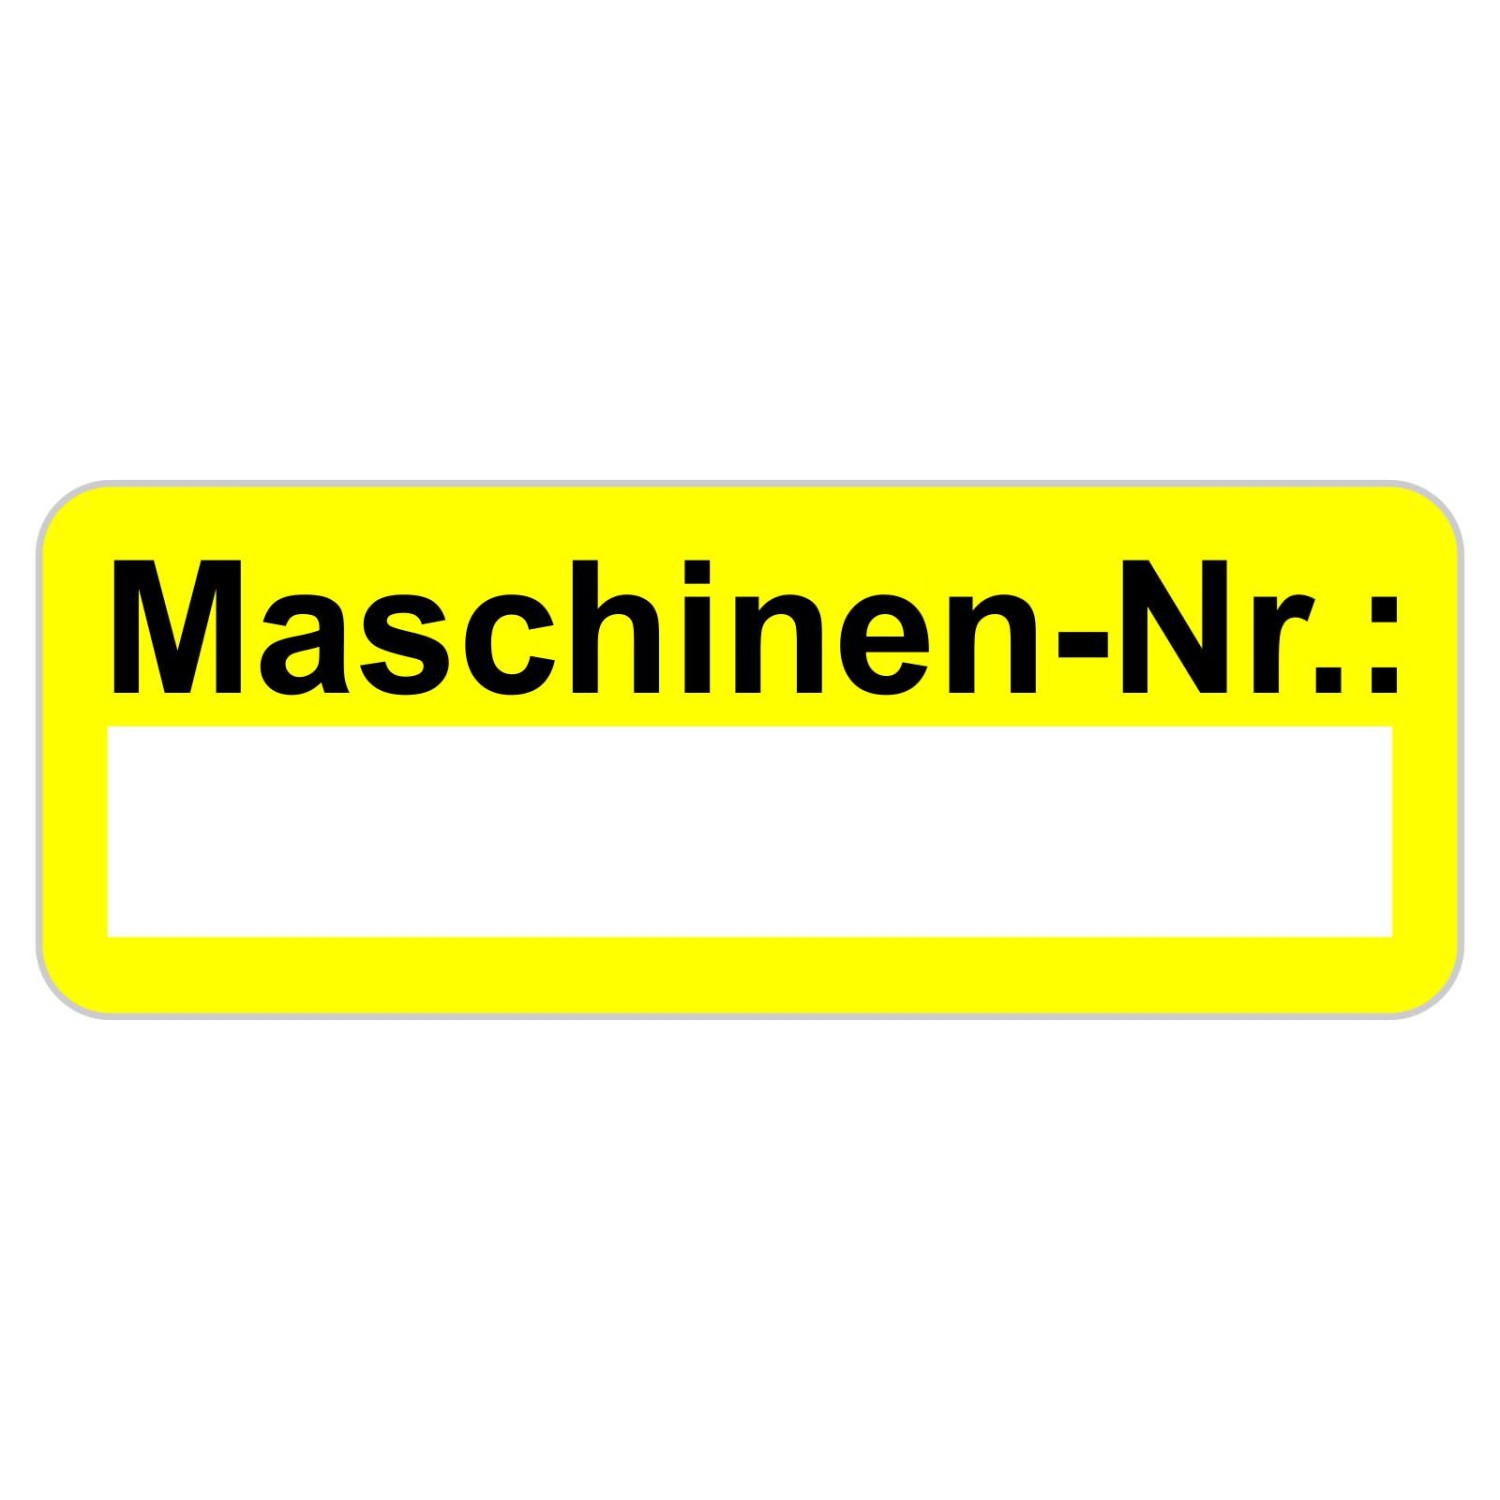 0. Foto Maschinennummer Aufkleber Etiketten selbstklebend 48 x 20 mm (Farbe: gelb zusätzliches Laminat: nein)